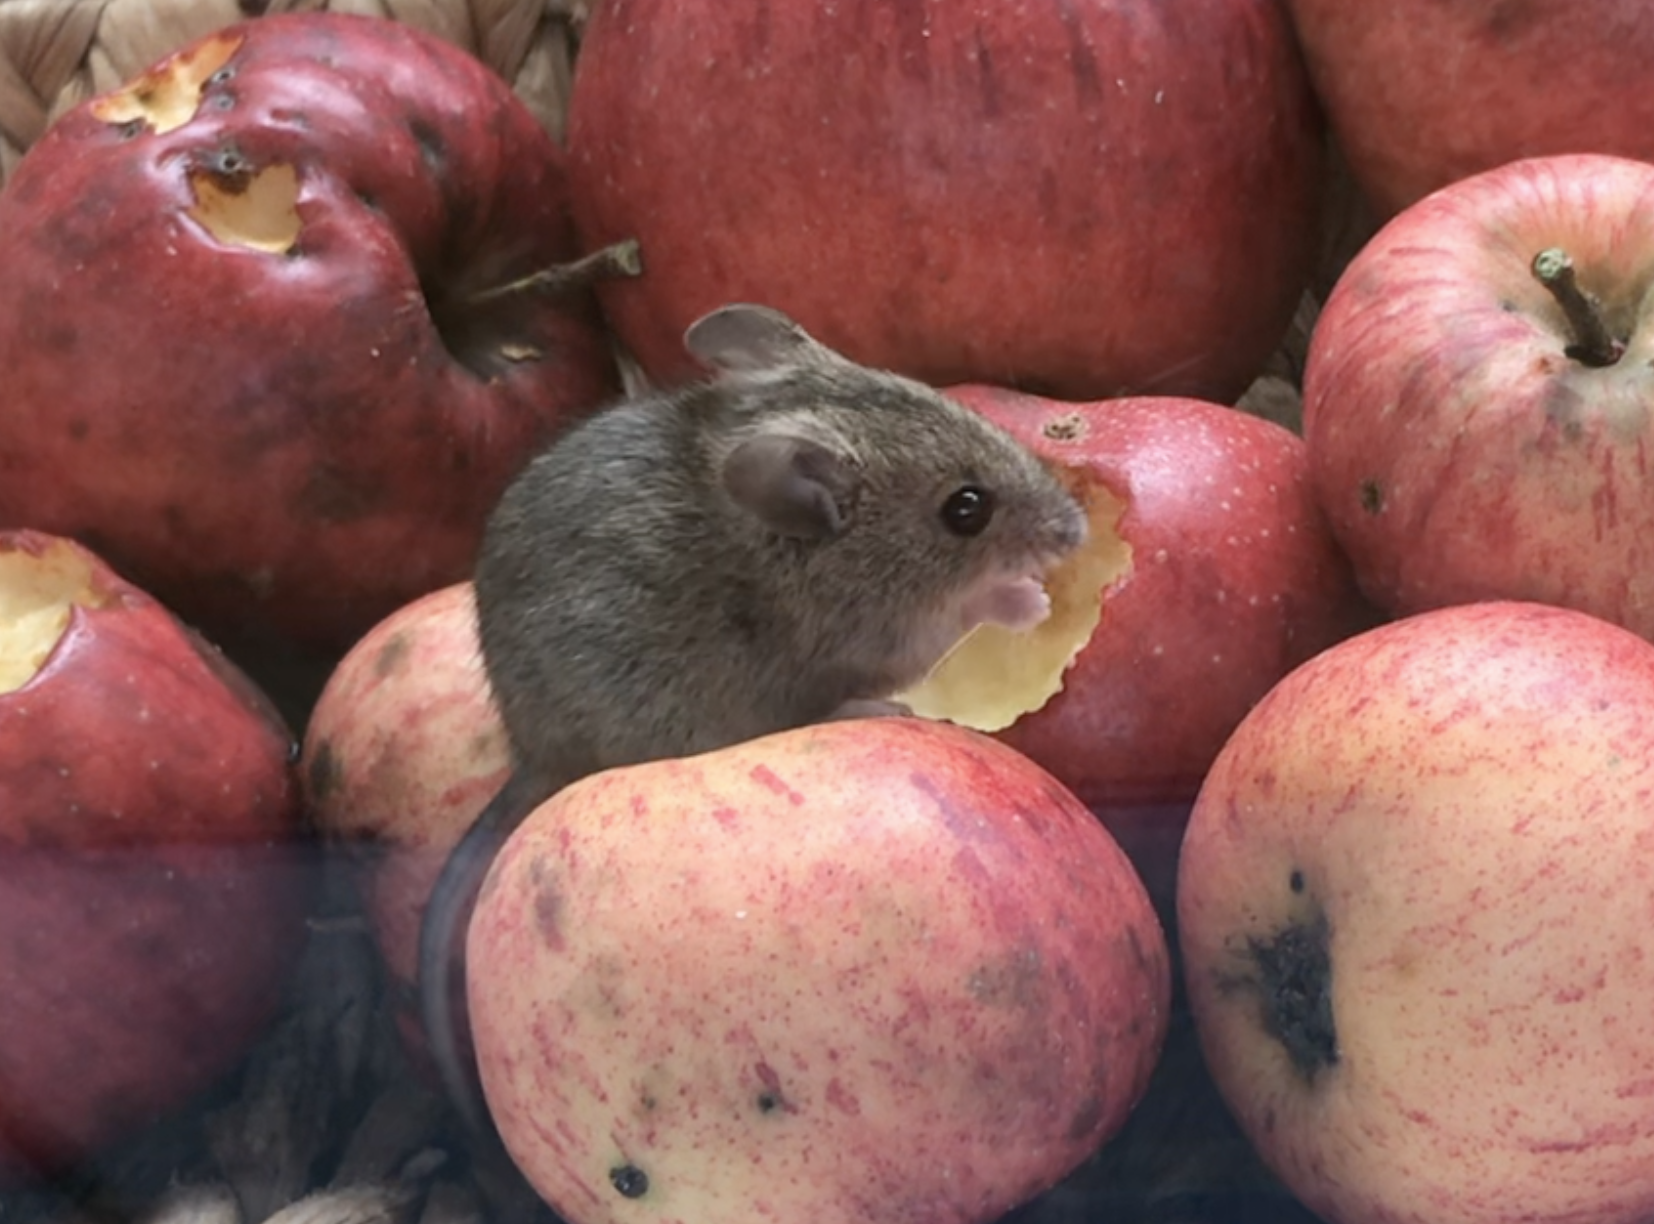 Noch einmal der Korb mit Äpfeln, diesmal mit einer Maus die eine Apfel gerade annagt.